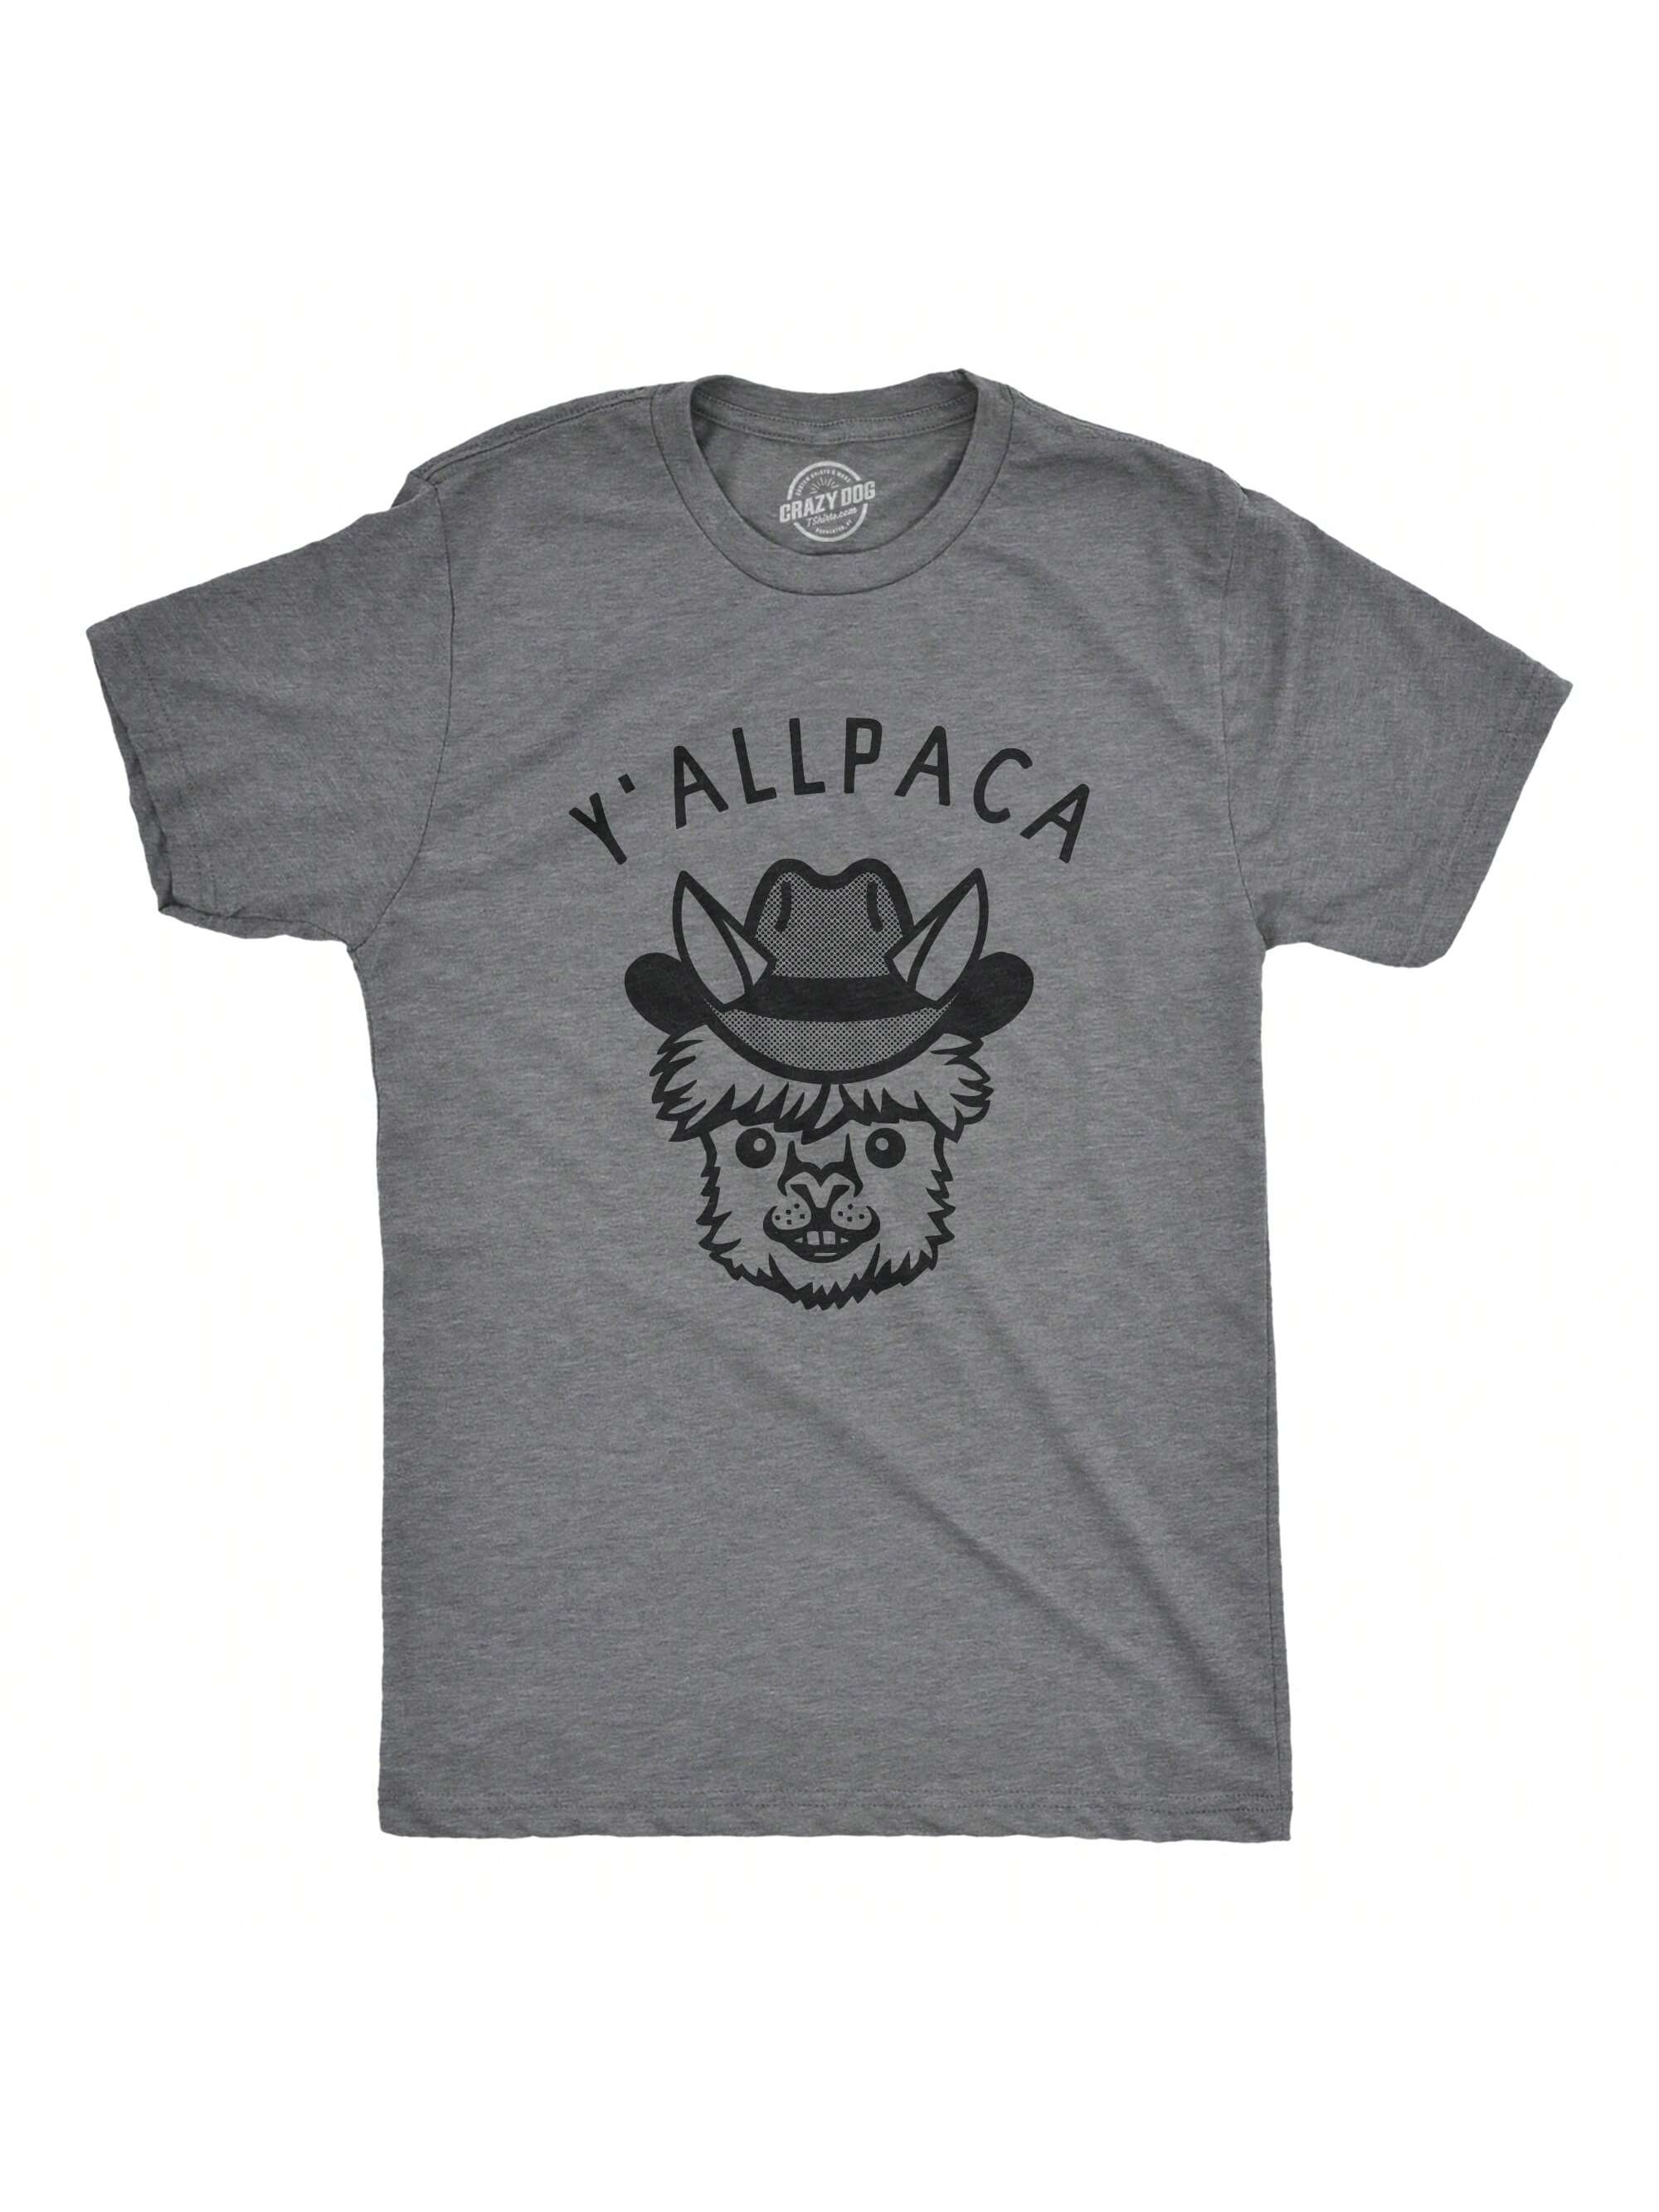 Мужская футболка «Nature Calls» с забавной саркастической надписью «Медведь какает», темно-серый вереск - yallpaca мужская футболка мафия медведь 2xl синий